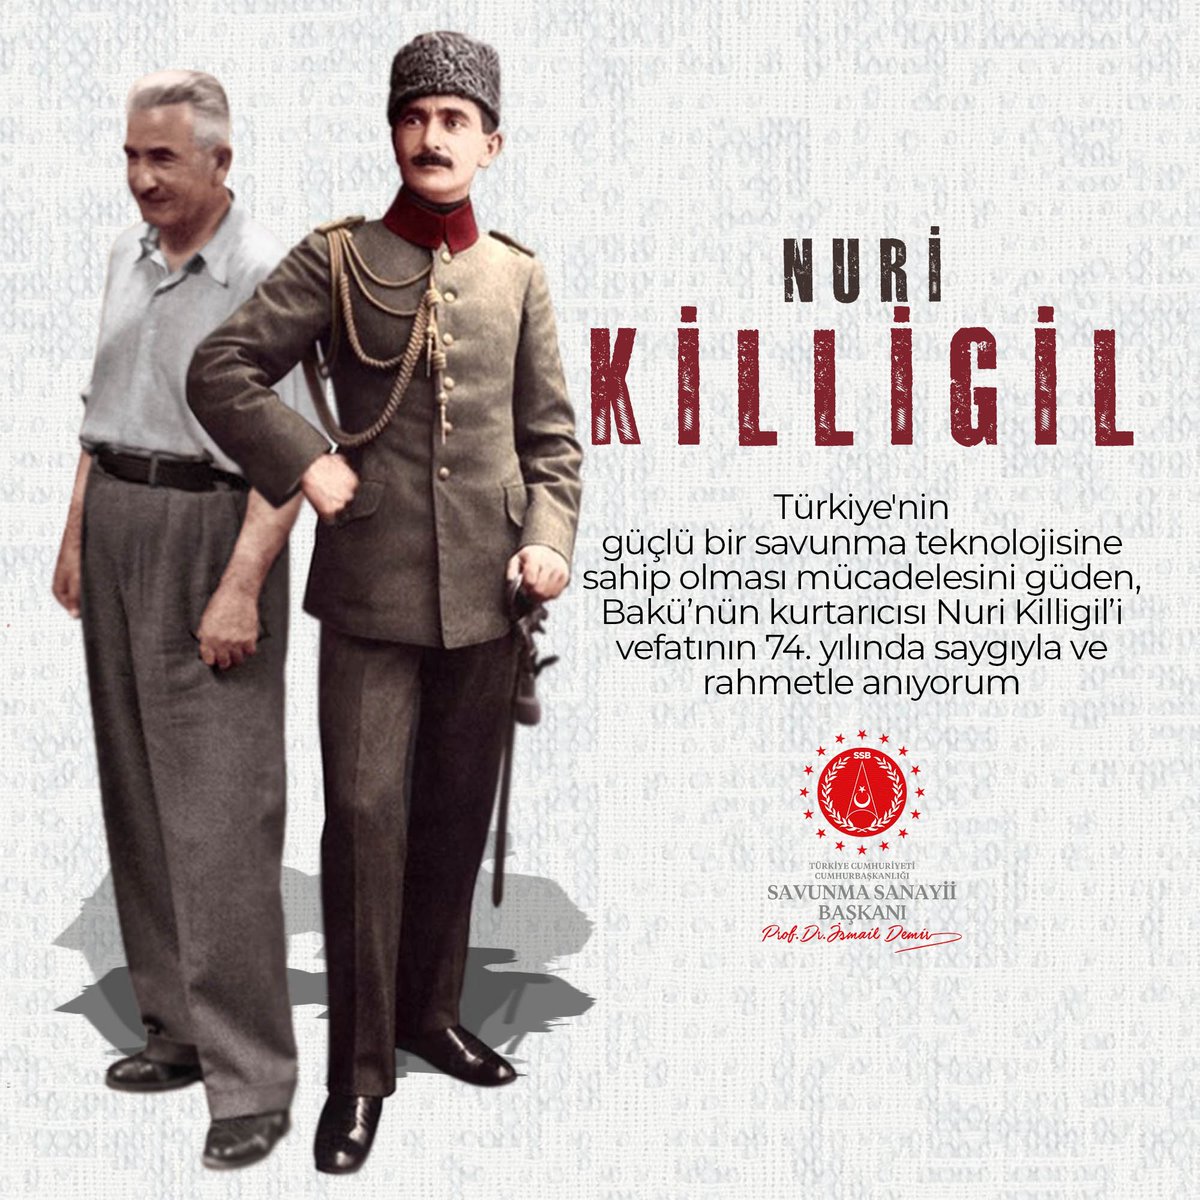 Türkiye’nin güçlü bir savunma teknolojisine sahip olması mücadelesini güden, Bakü’nün kurtarıcısı Nuri Killigil’i vefatının 74. yılında saygıyla ve rahmetle anıyorum.

#NuriKilligil